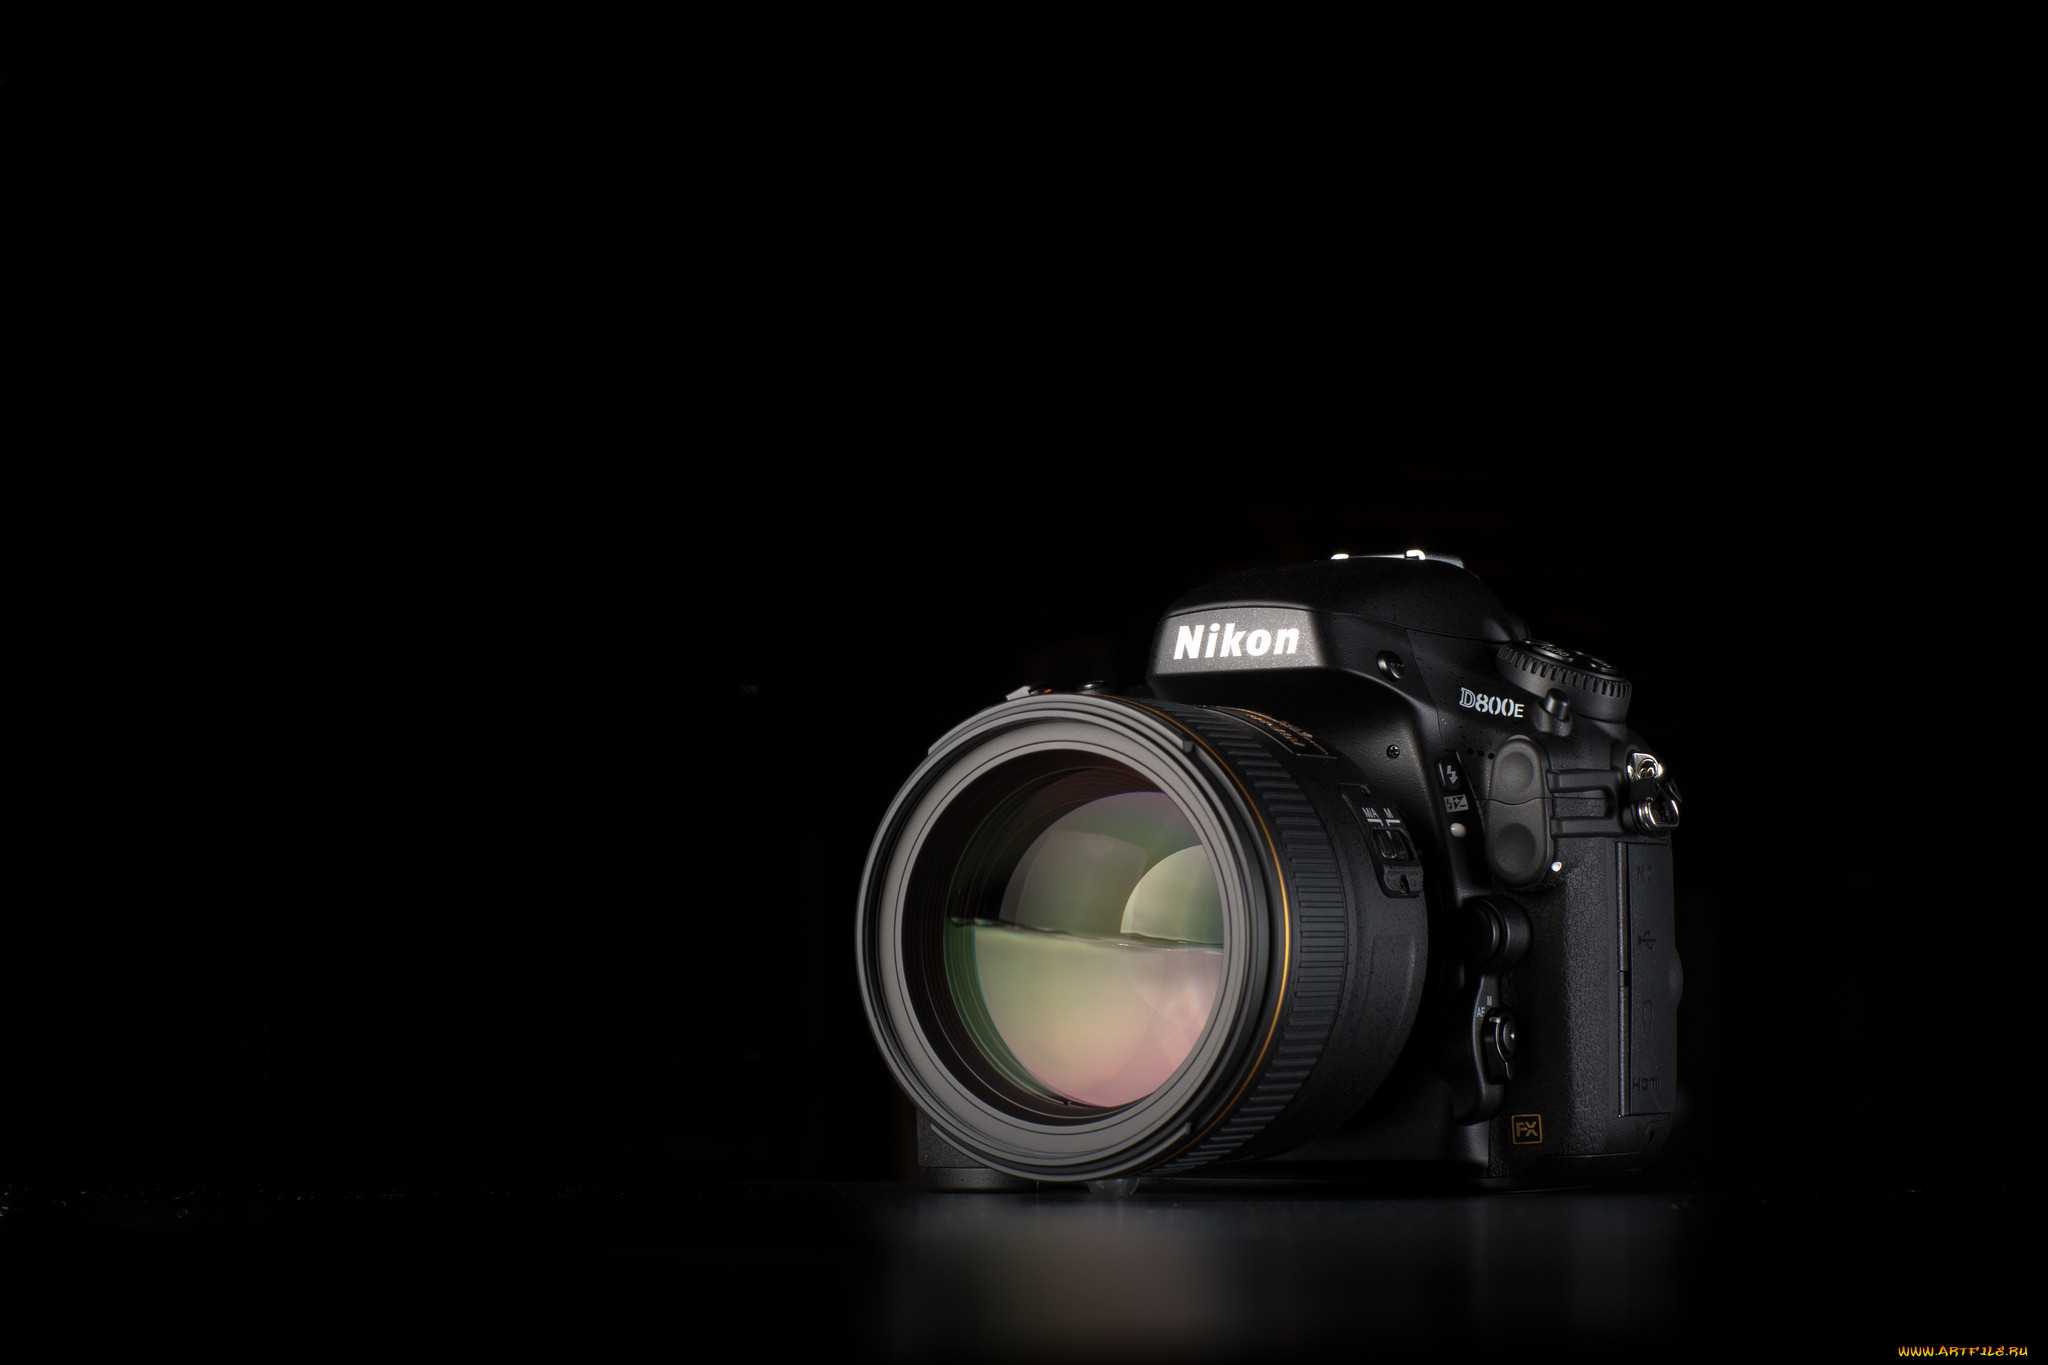 Nikon d800содержание а также особенности [ править ]